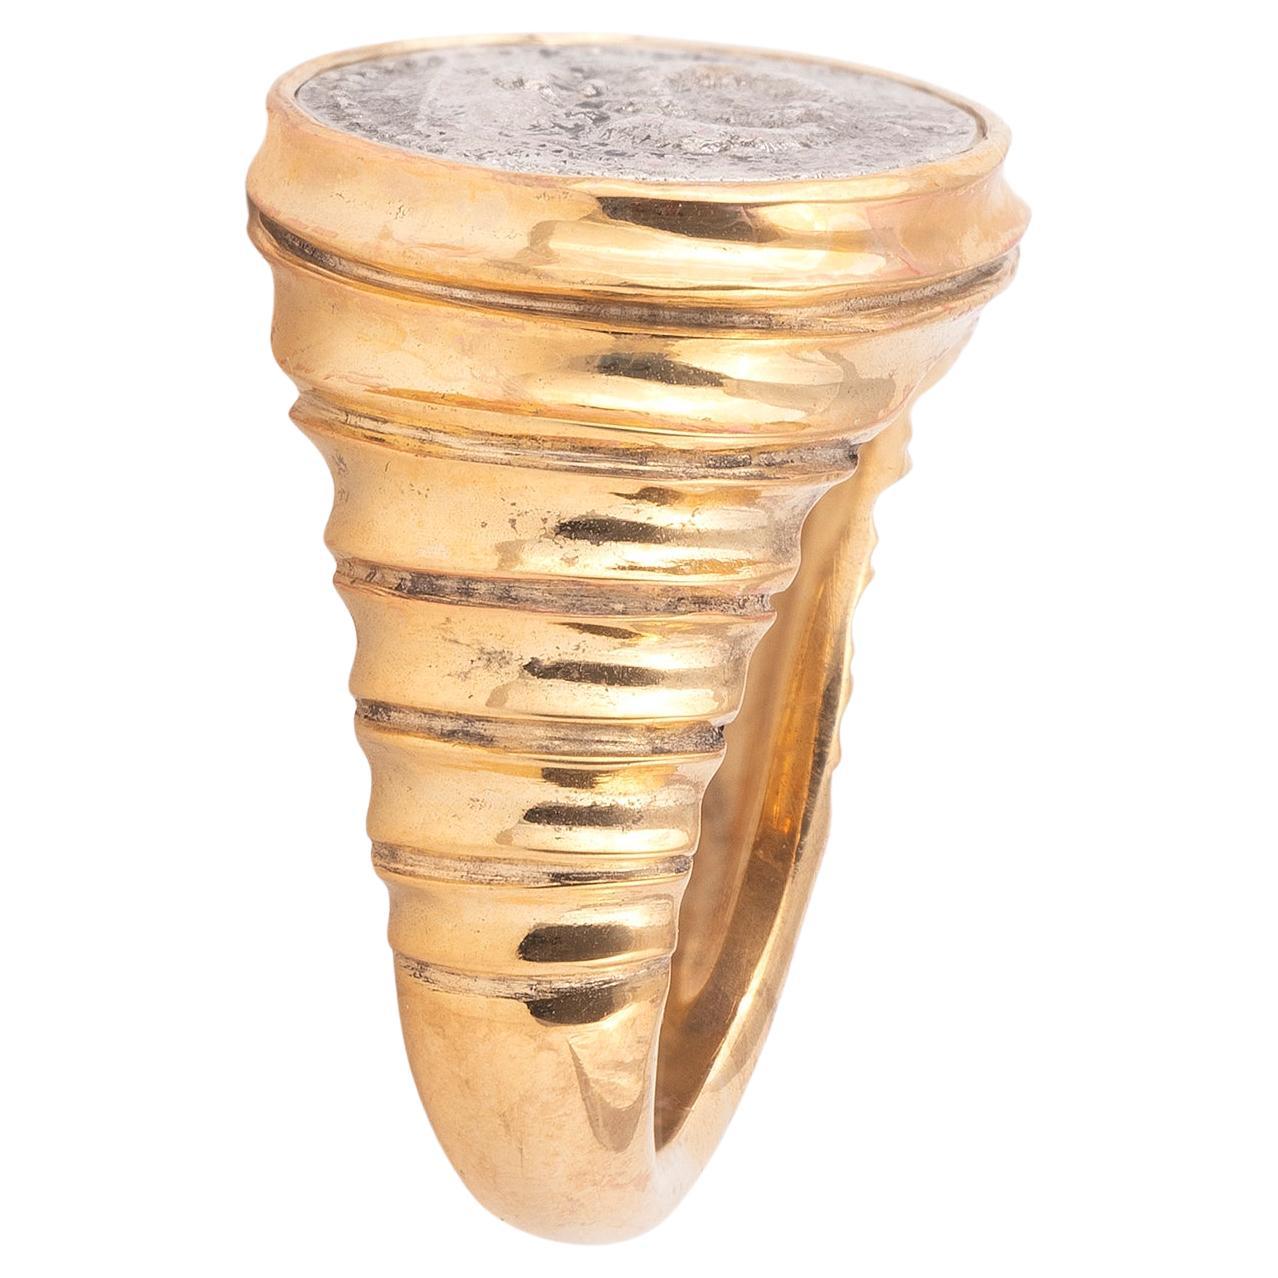 Ring in Form einer antiken römischen Silbermünze mit Lünette. 
Zentrierende Silbermünze, die Gorgoneion, eine Medusa, darstellt.
Ringgröße: 7 und groß
Gesamtgewicht: 12,41 Gramm 